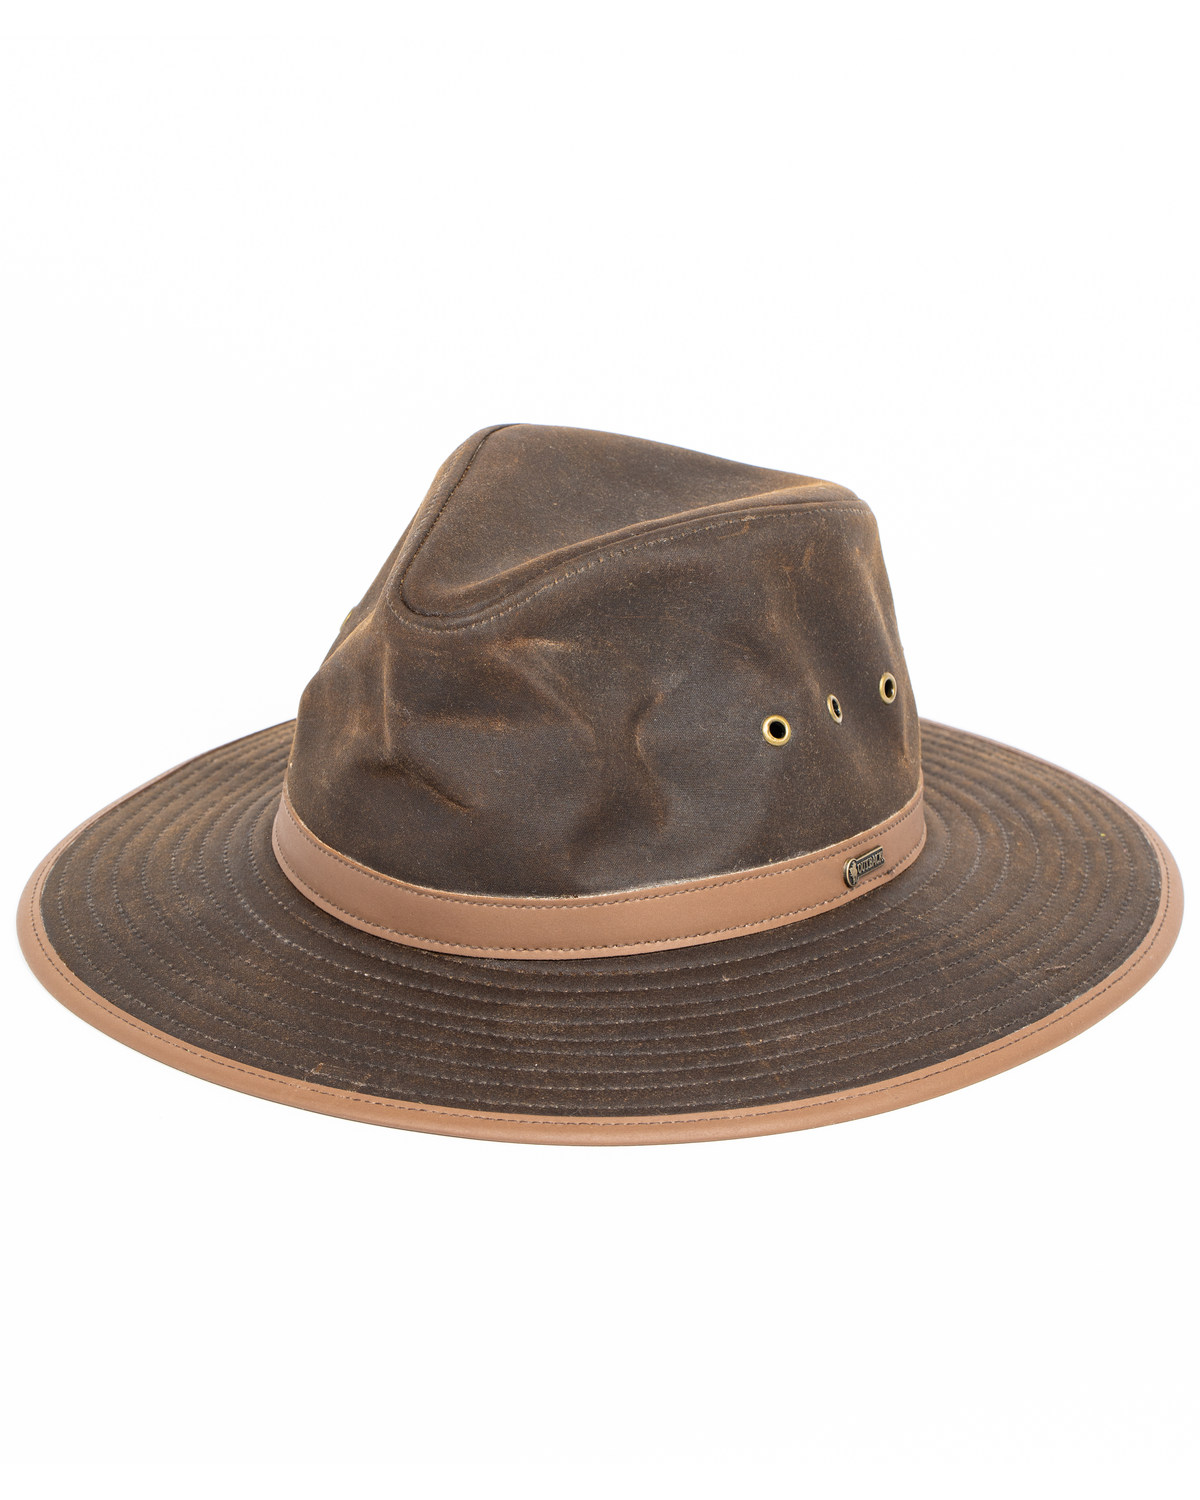 Outback Men's Deer Hunter Hat